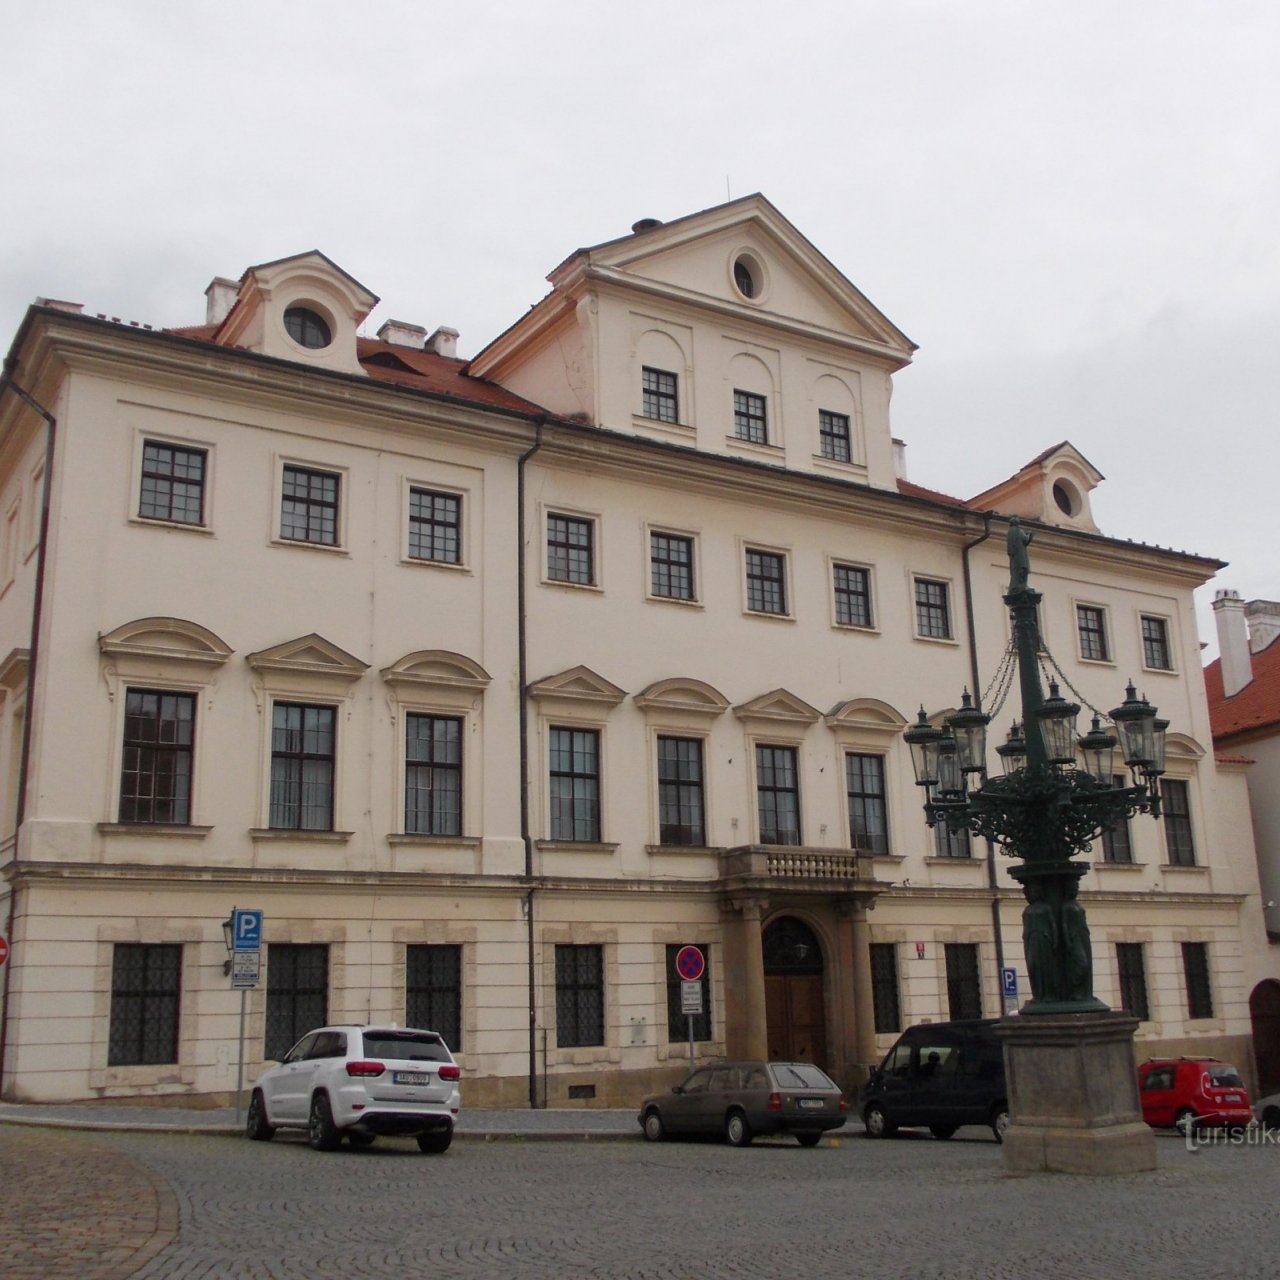 Praha - Martinický palác na Loretanskej ulici